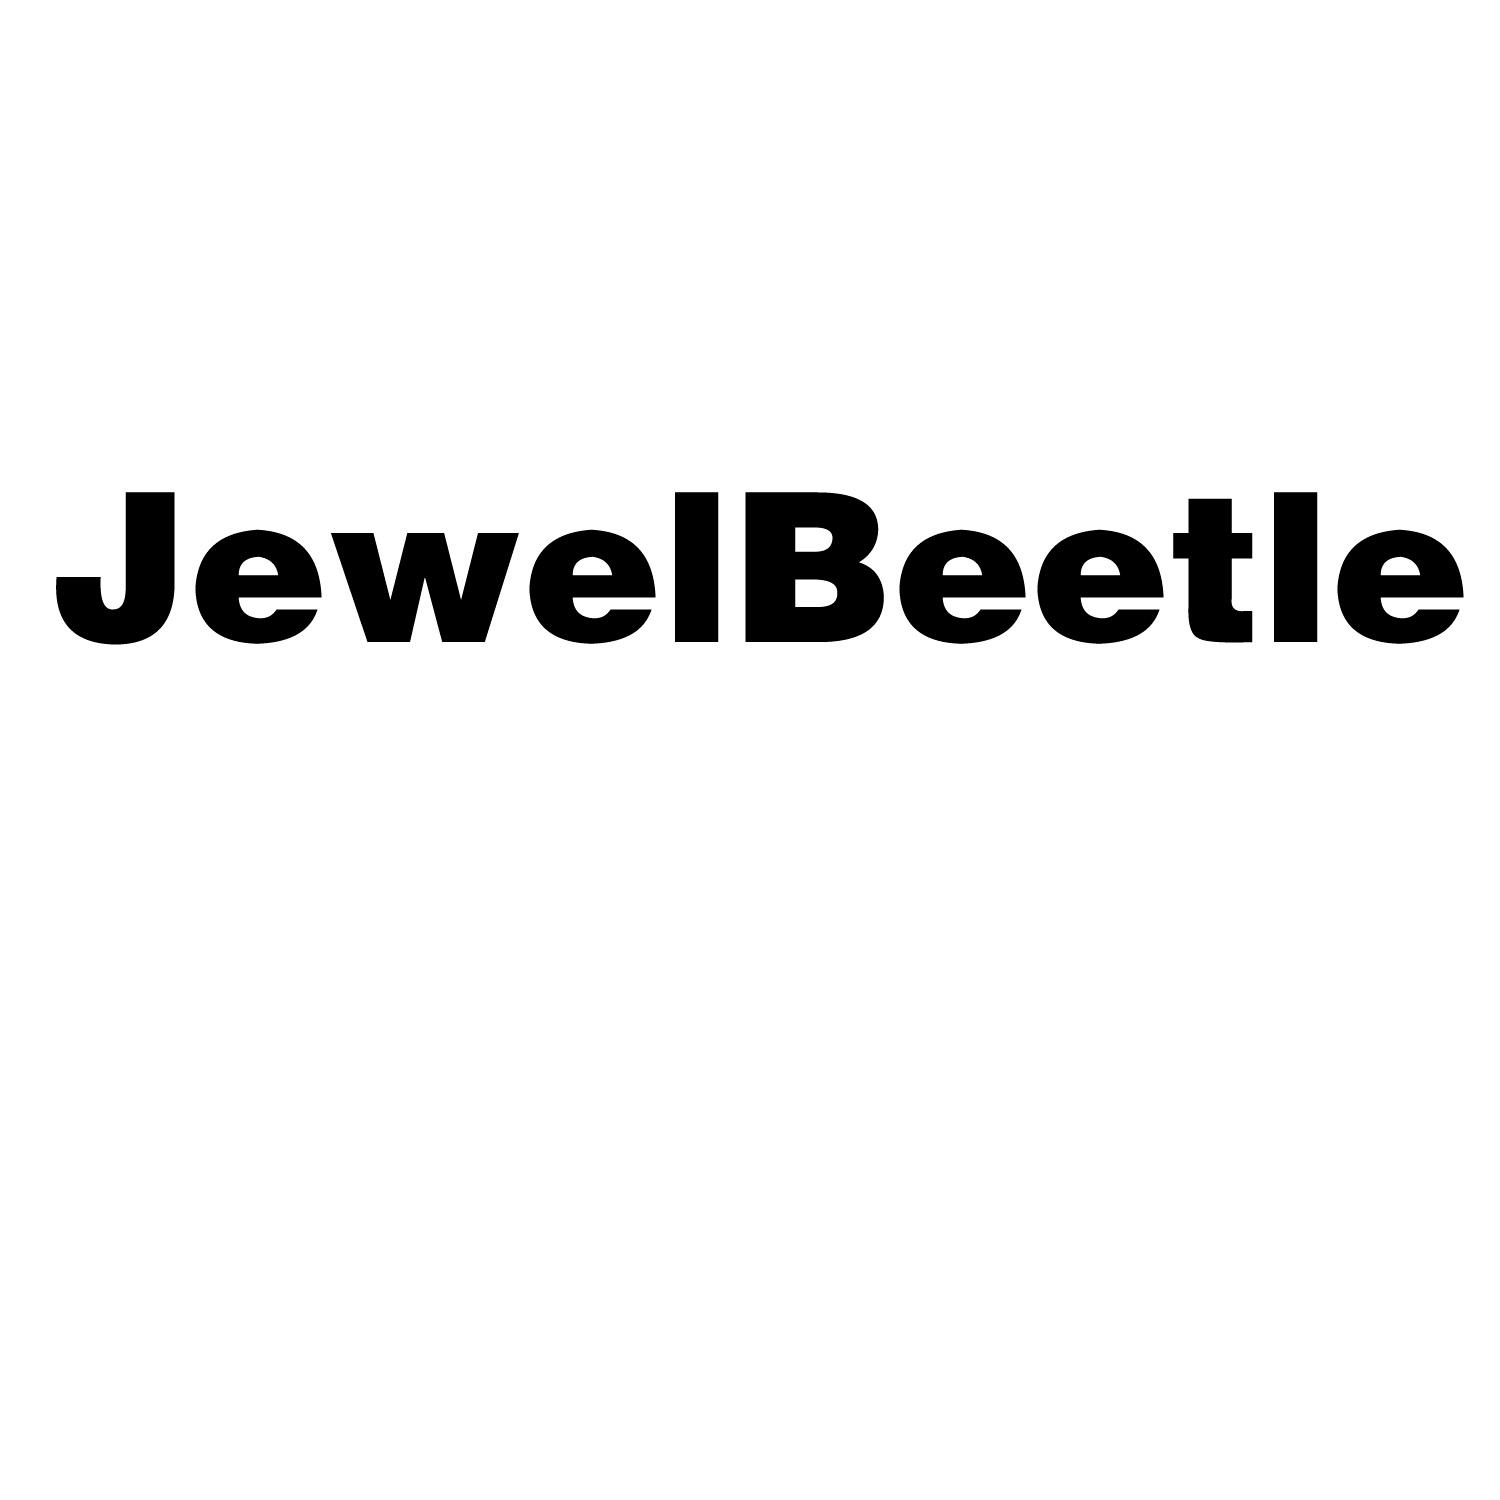 jewelbeetle